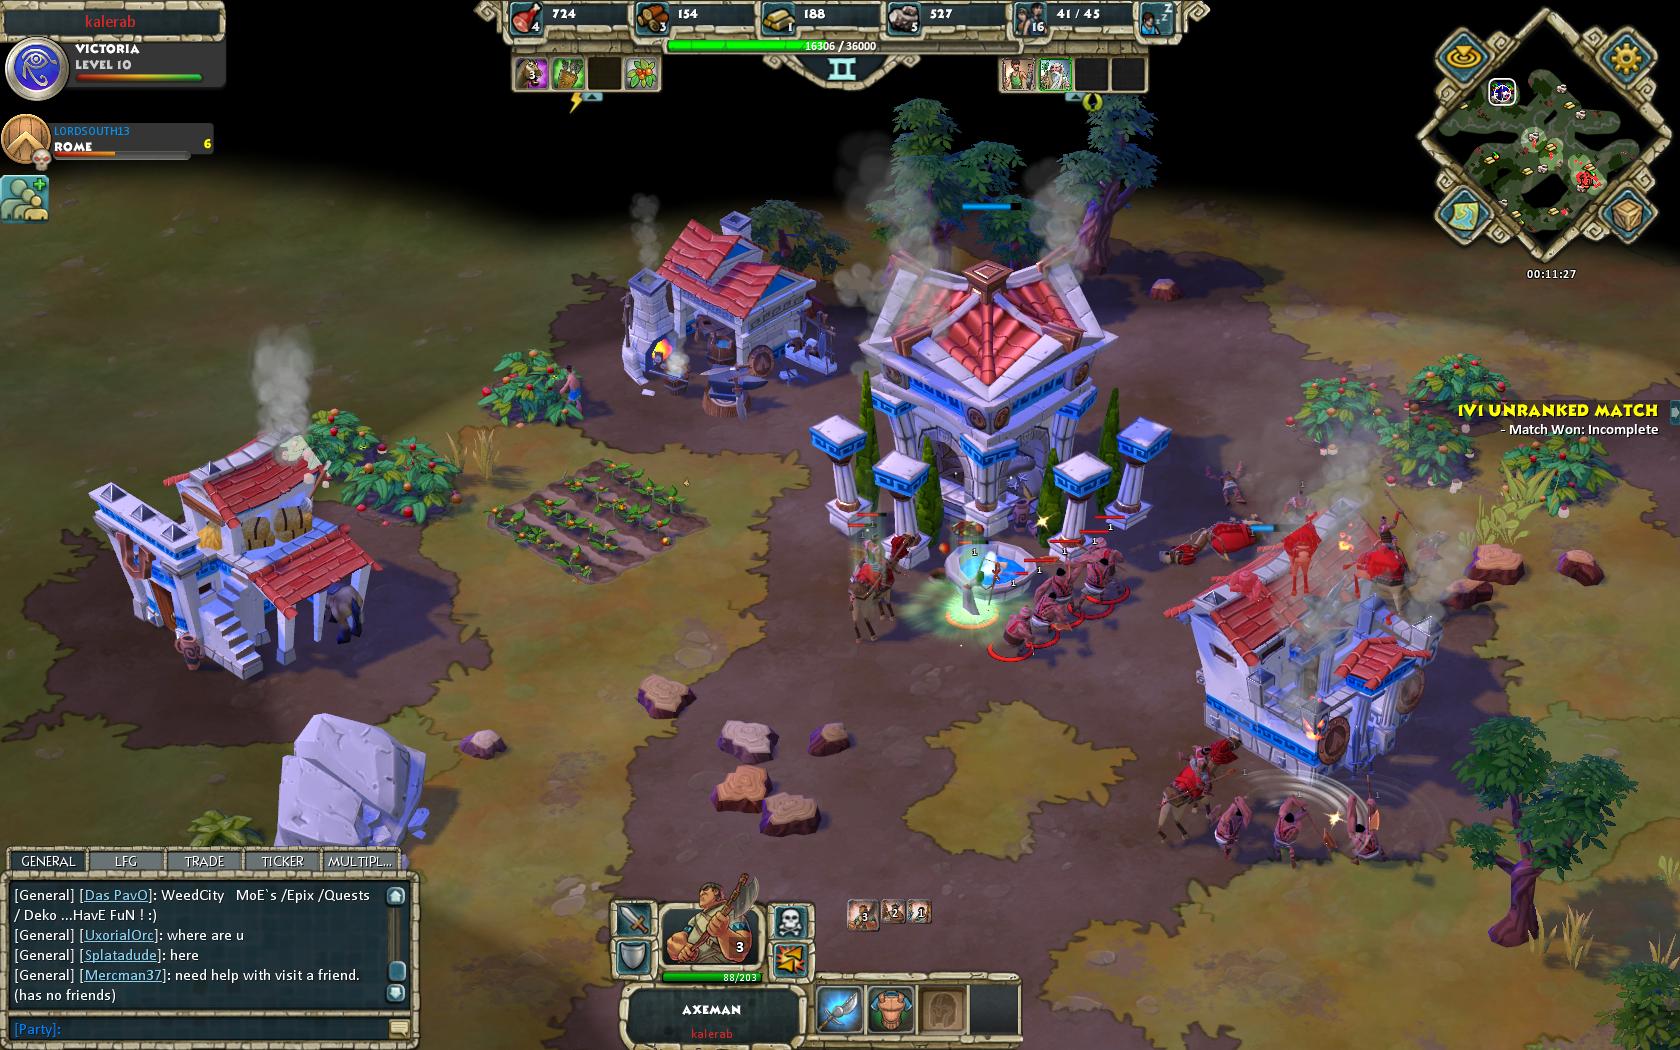 Age of Empires Online PvP scenre sa hraj aj v rebrkovch  zpasoch.